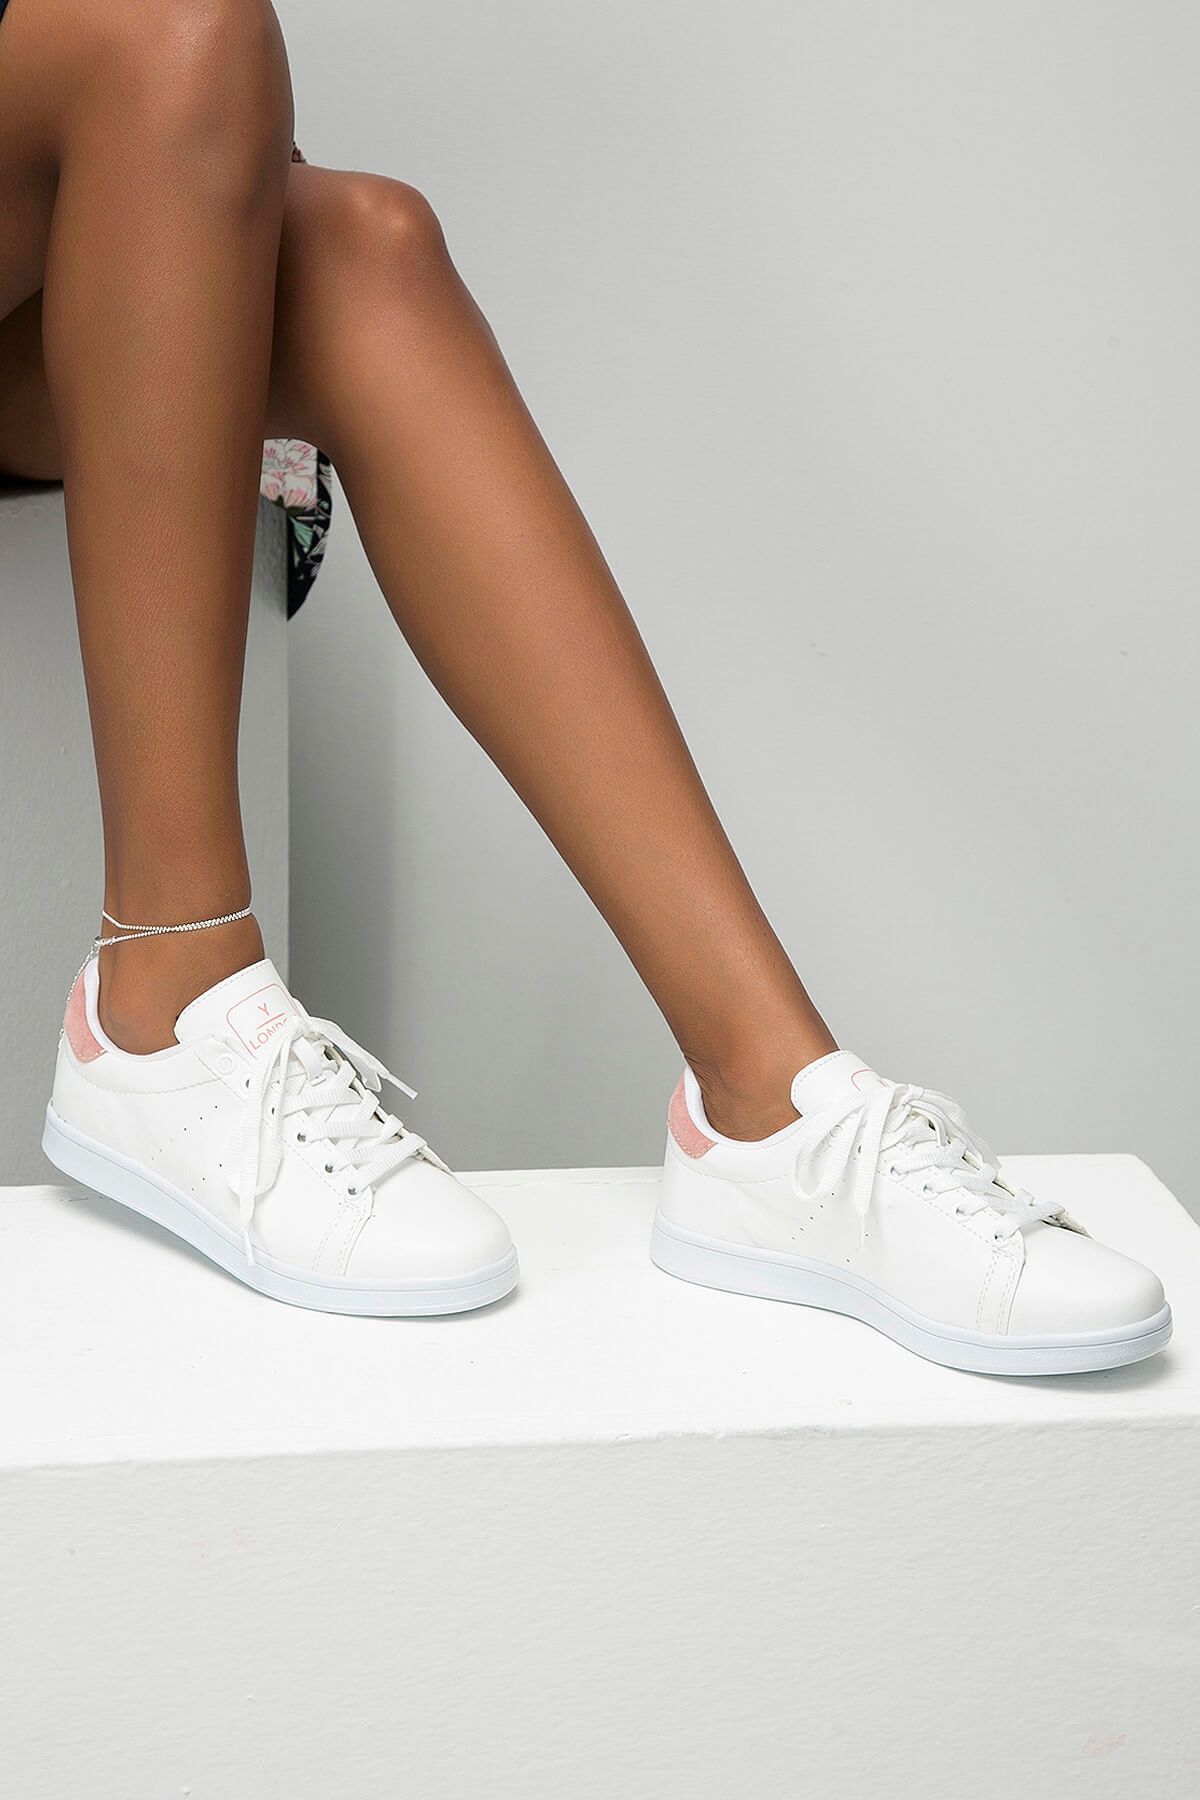 Y-London Beyaz Pudra Kadın Spor Ayakkabı 669-8-8600